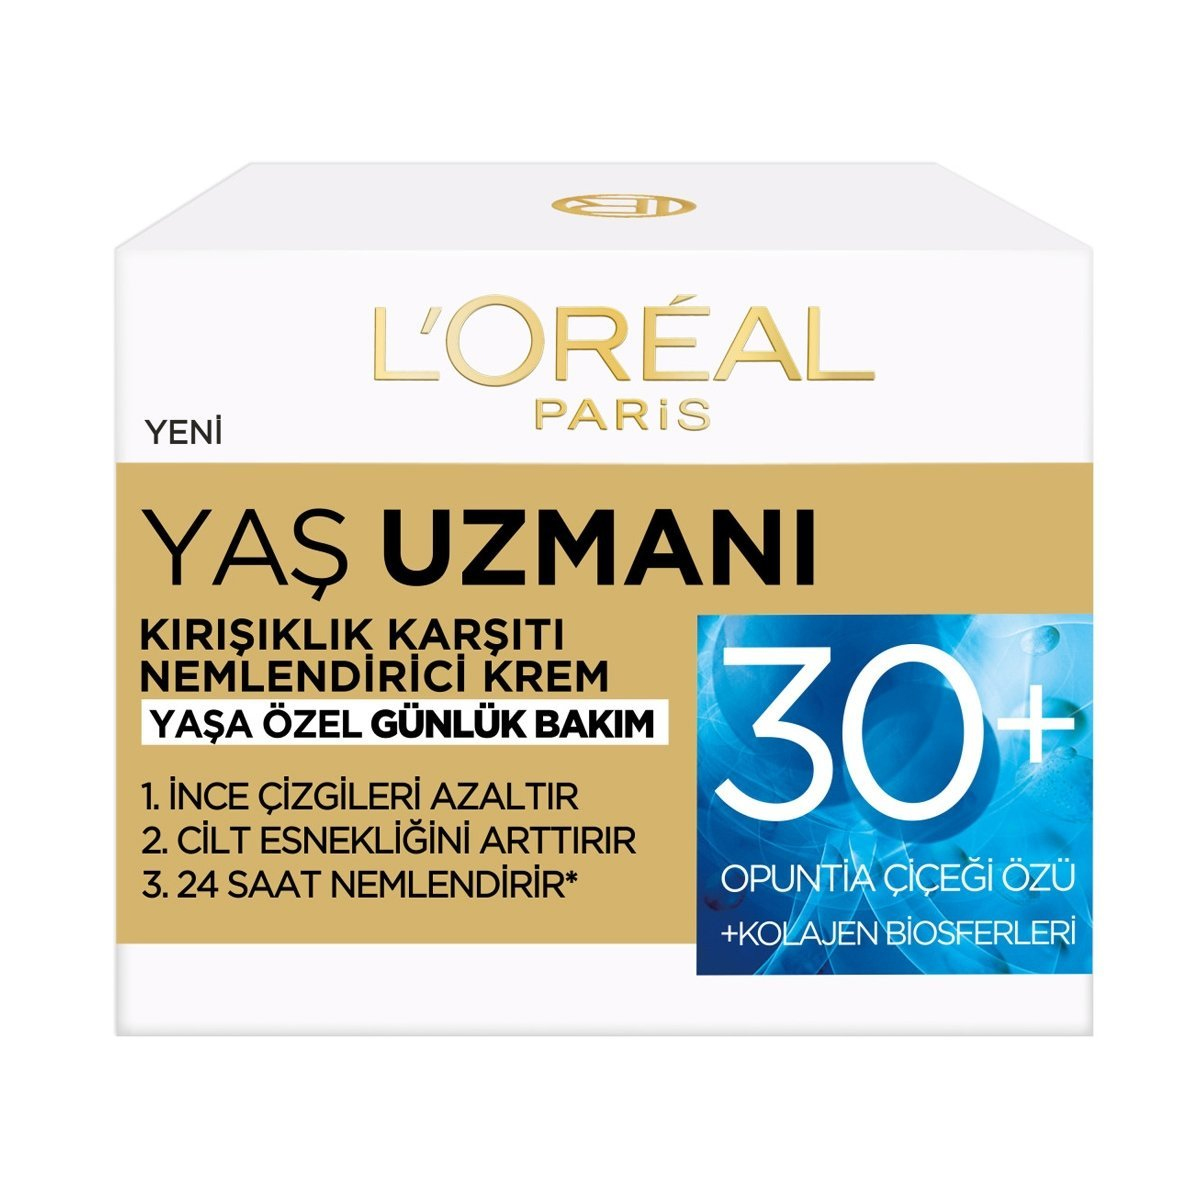 L'Oréal Yaş Uzmanı Kırışıklık Karşıtı Sıkılaştırıcı Krem 30 Yaş Üzeri 50 ml